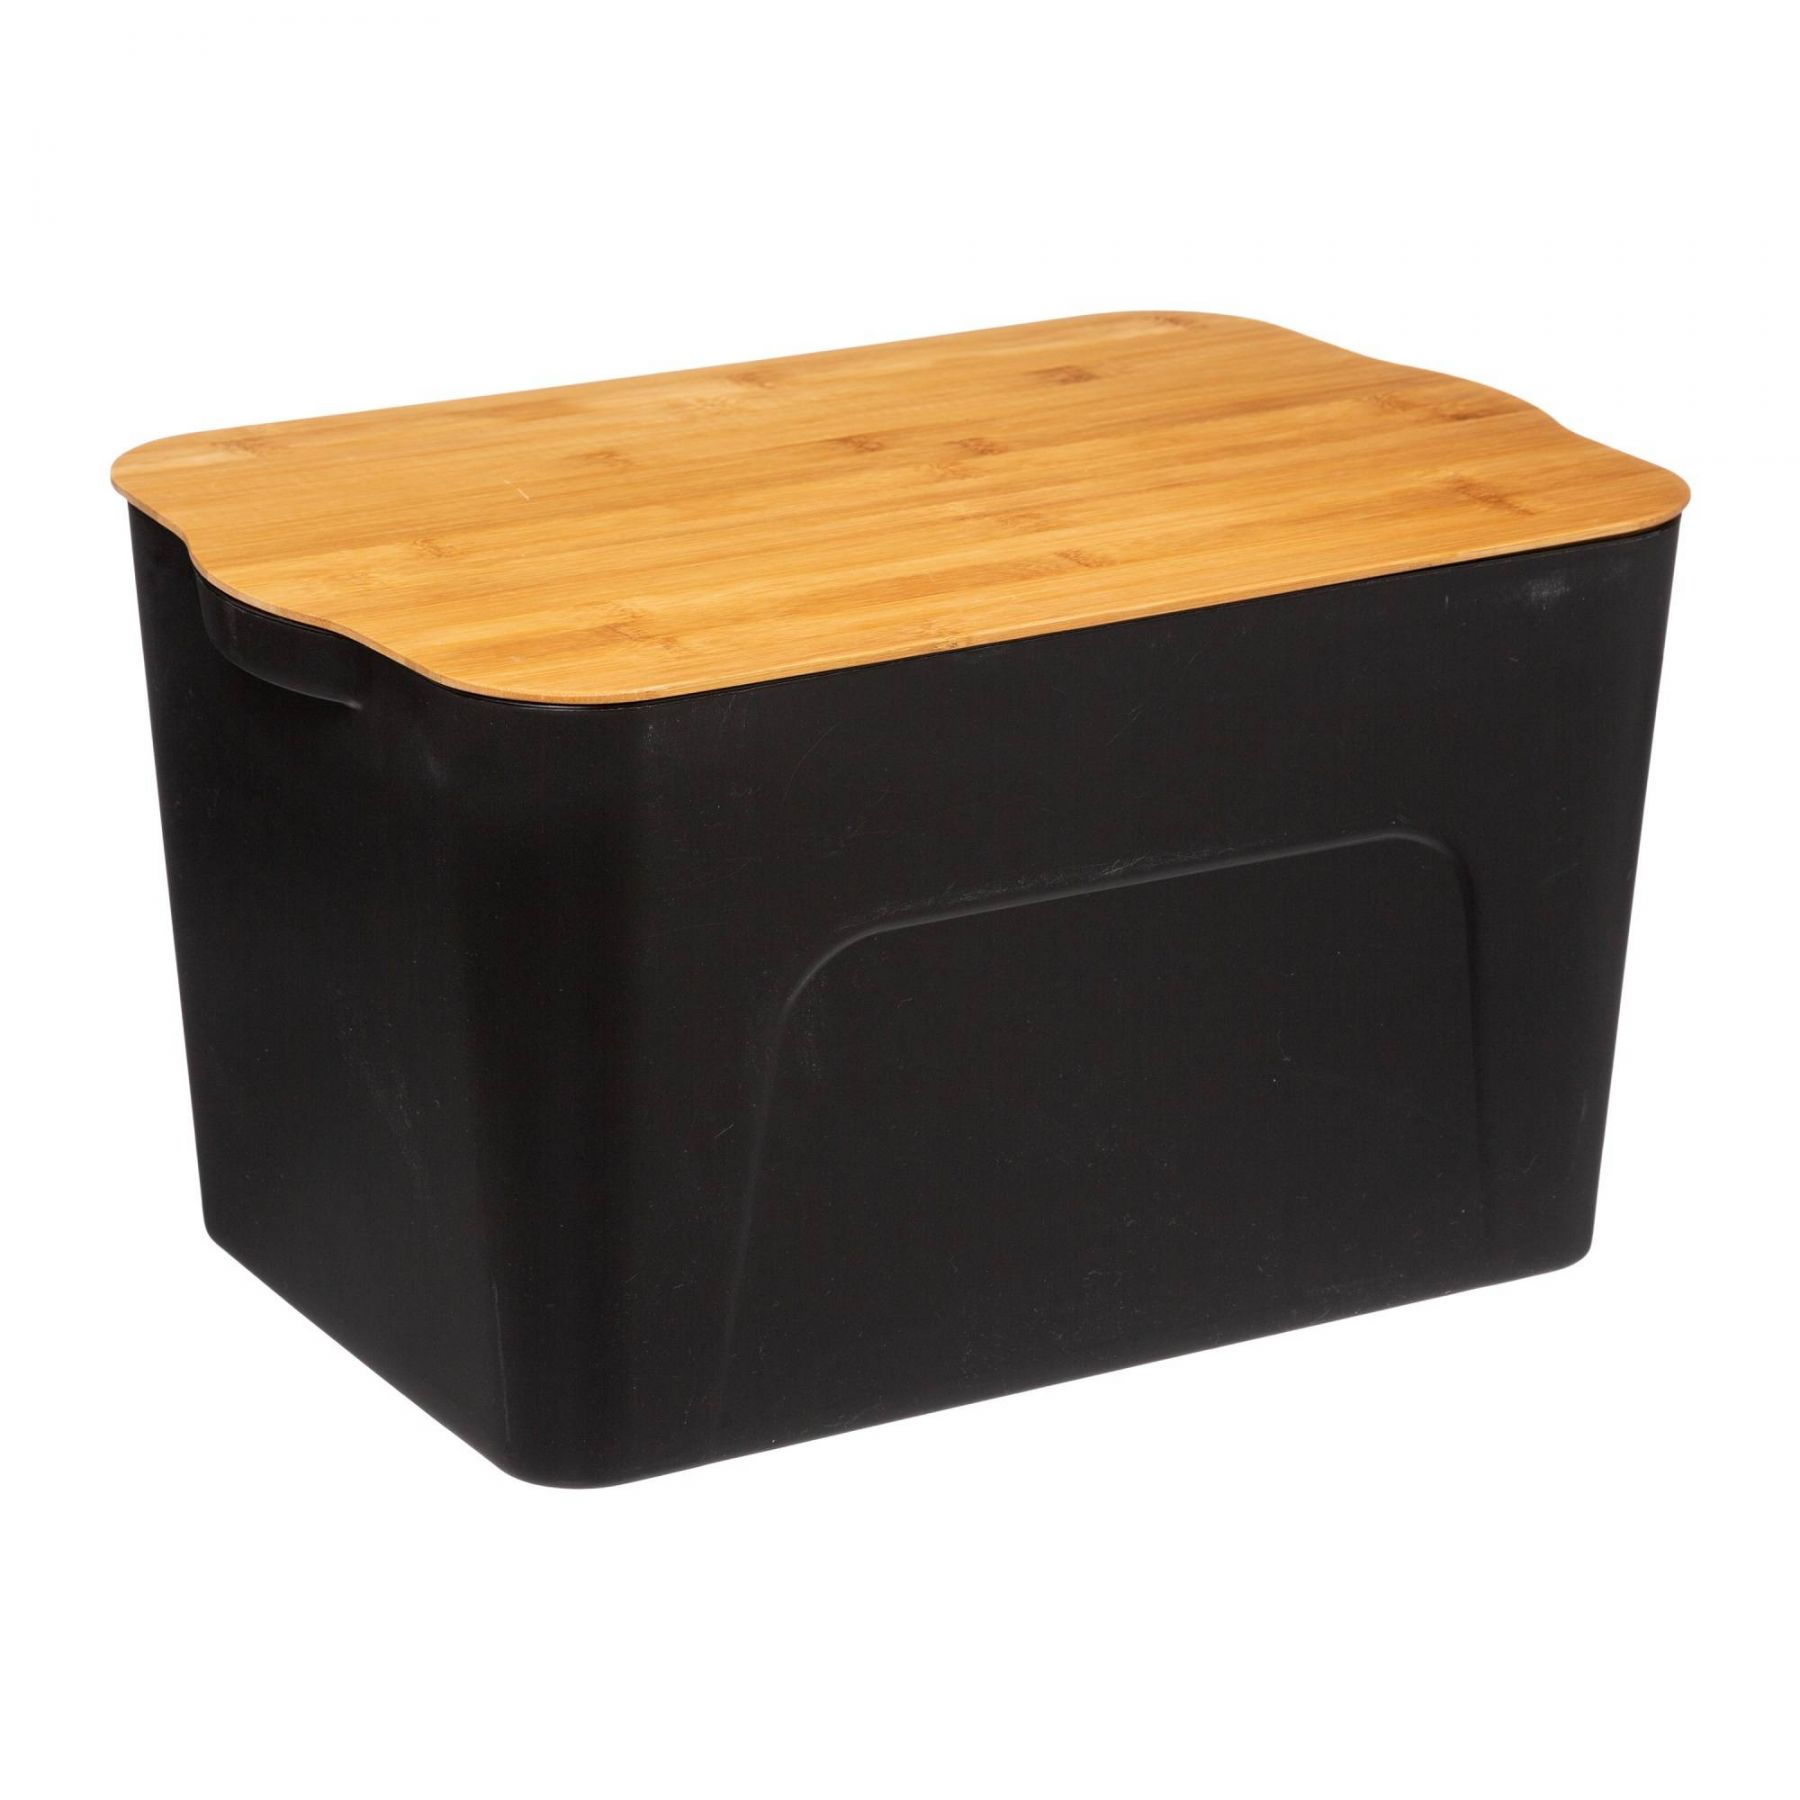 5five Simply Smart Plastový box s bambusovým víkem, 24 l - EMAKO.CZ s.r.o.